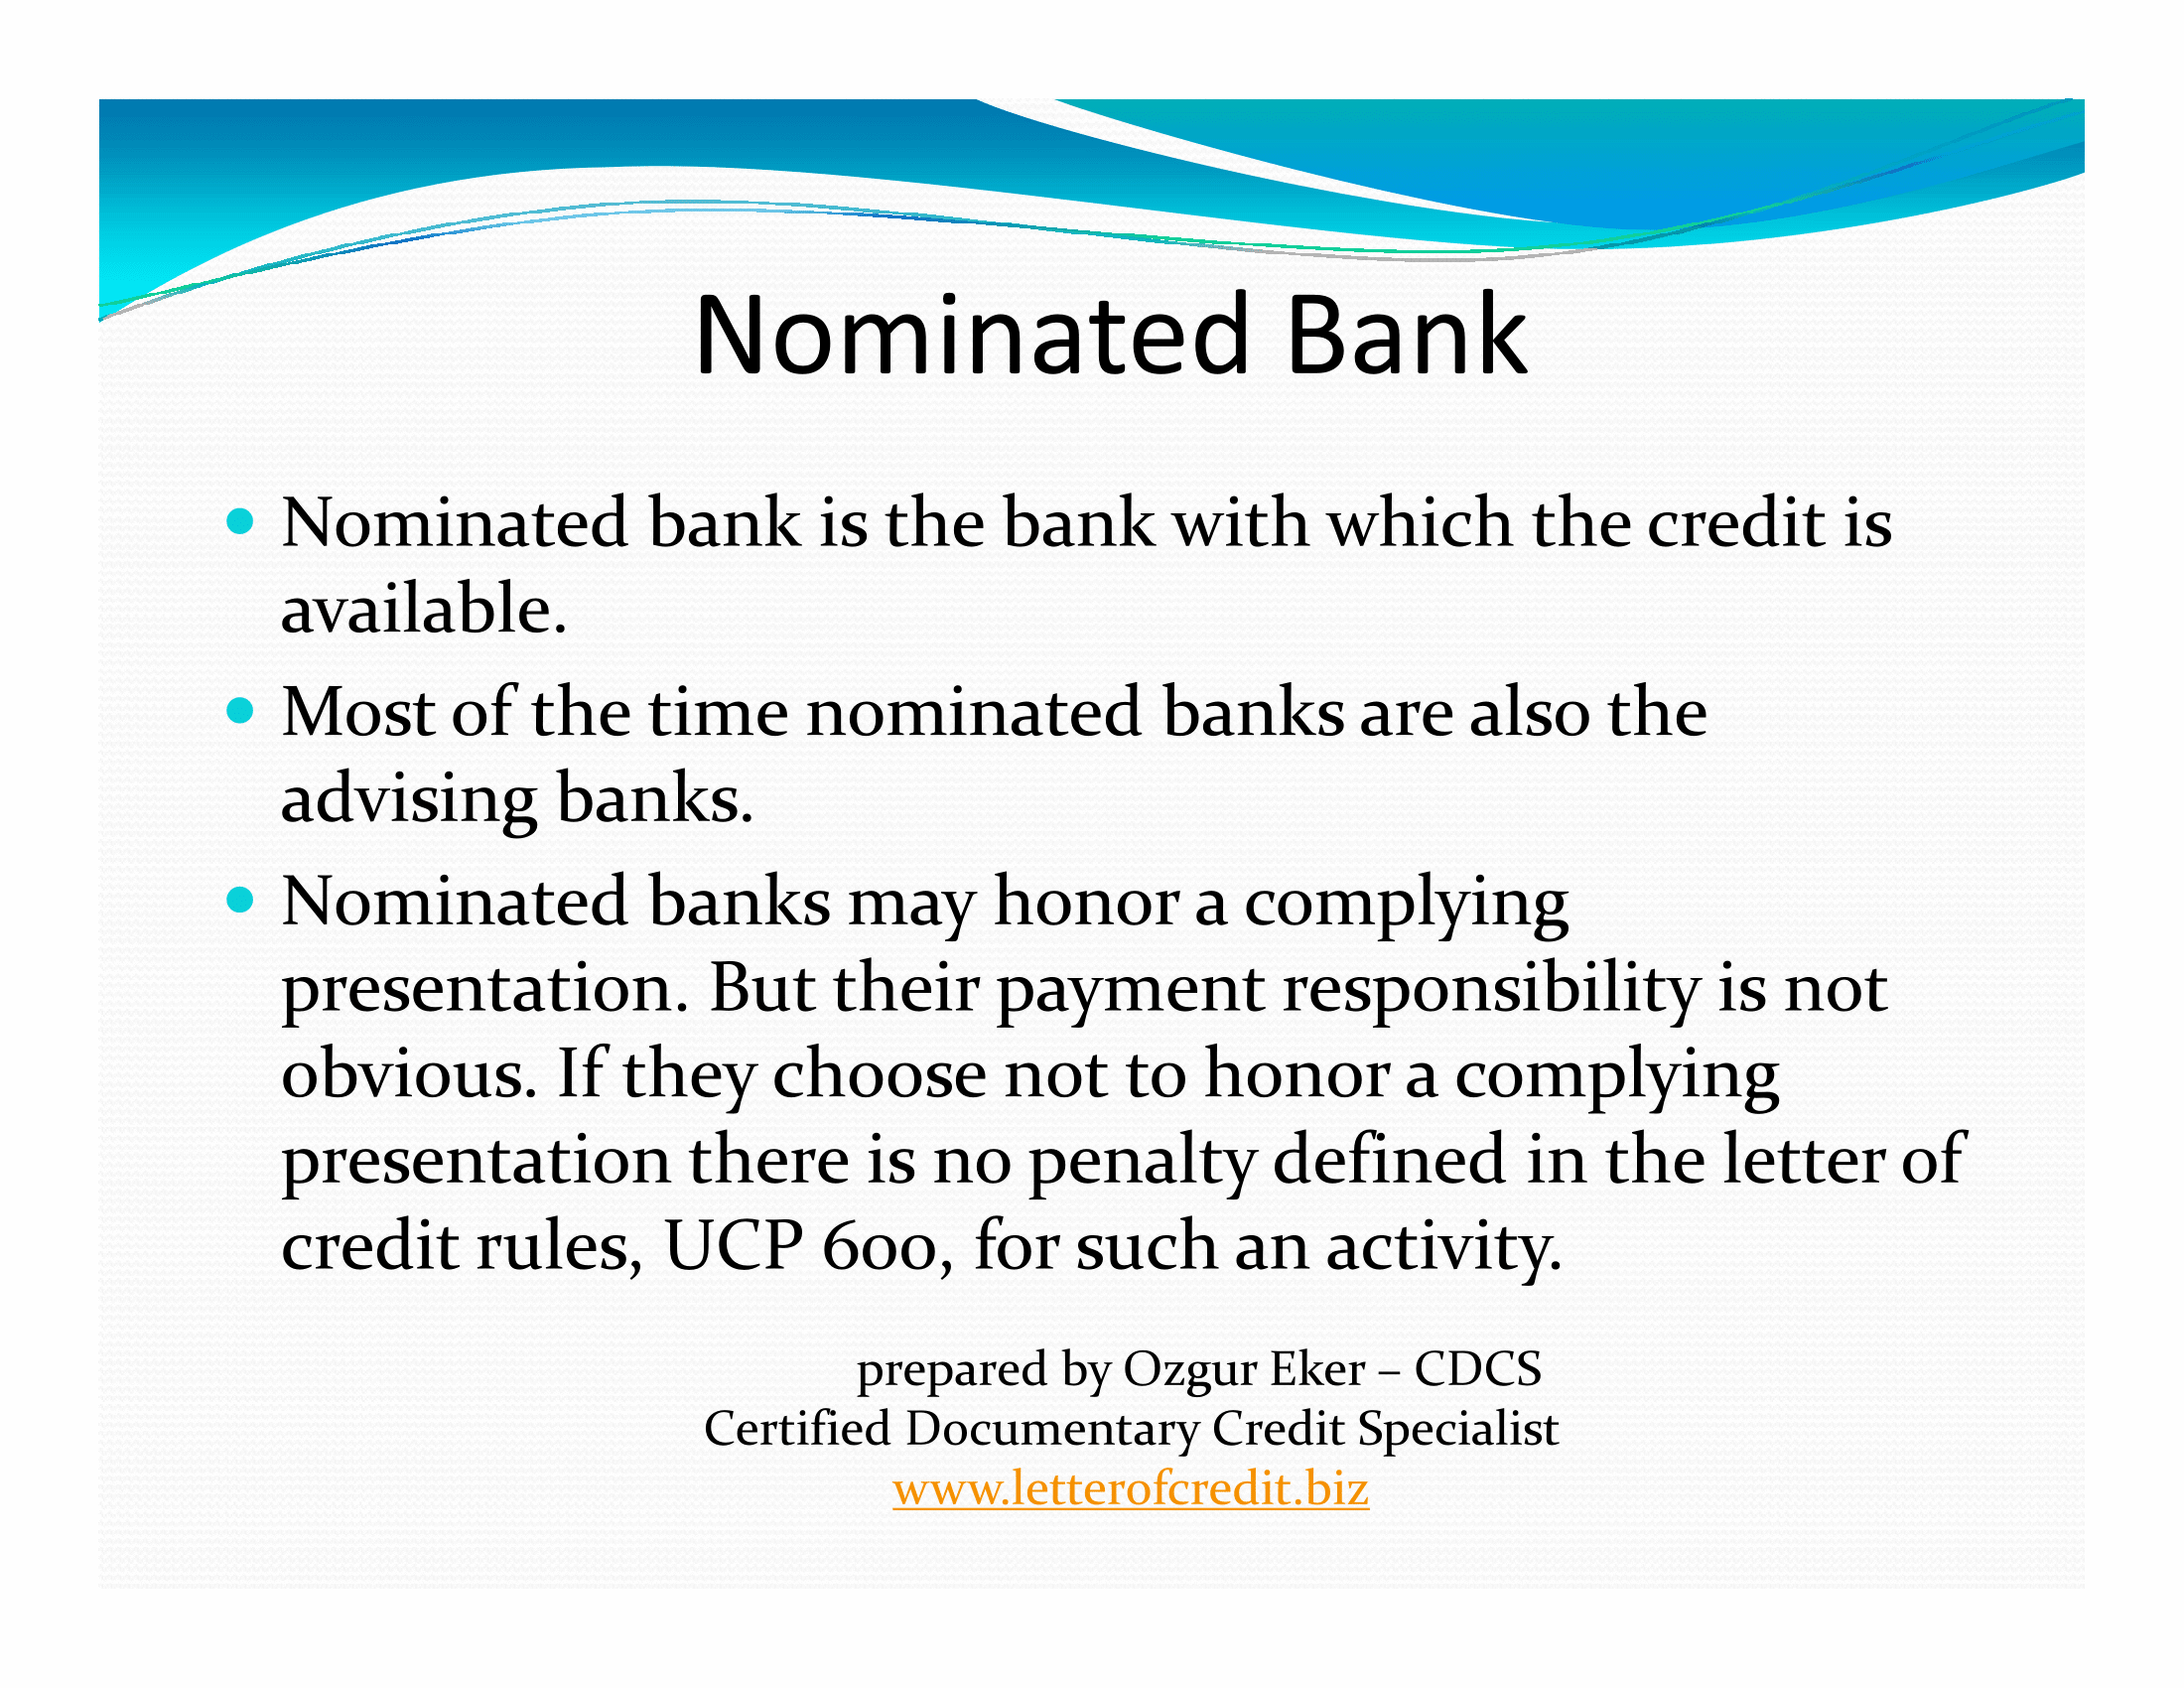 nominated bank